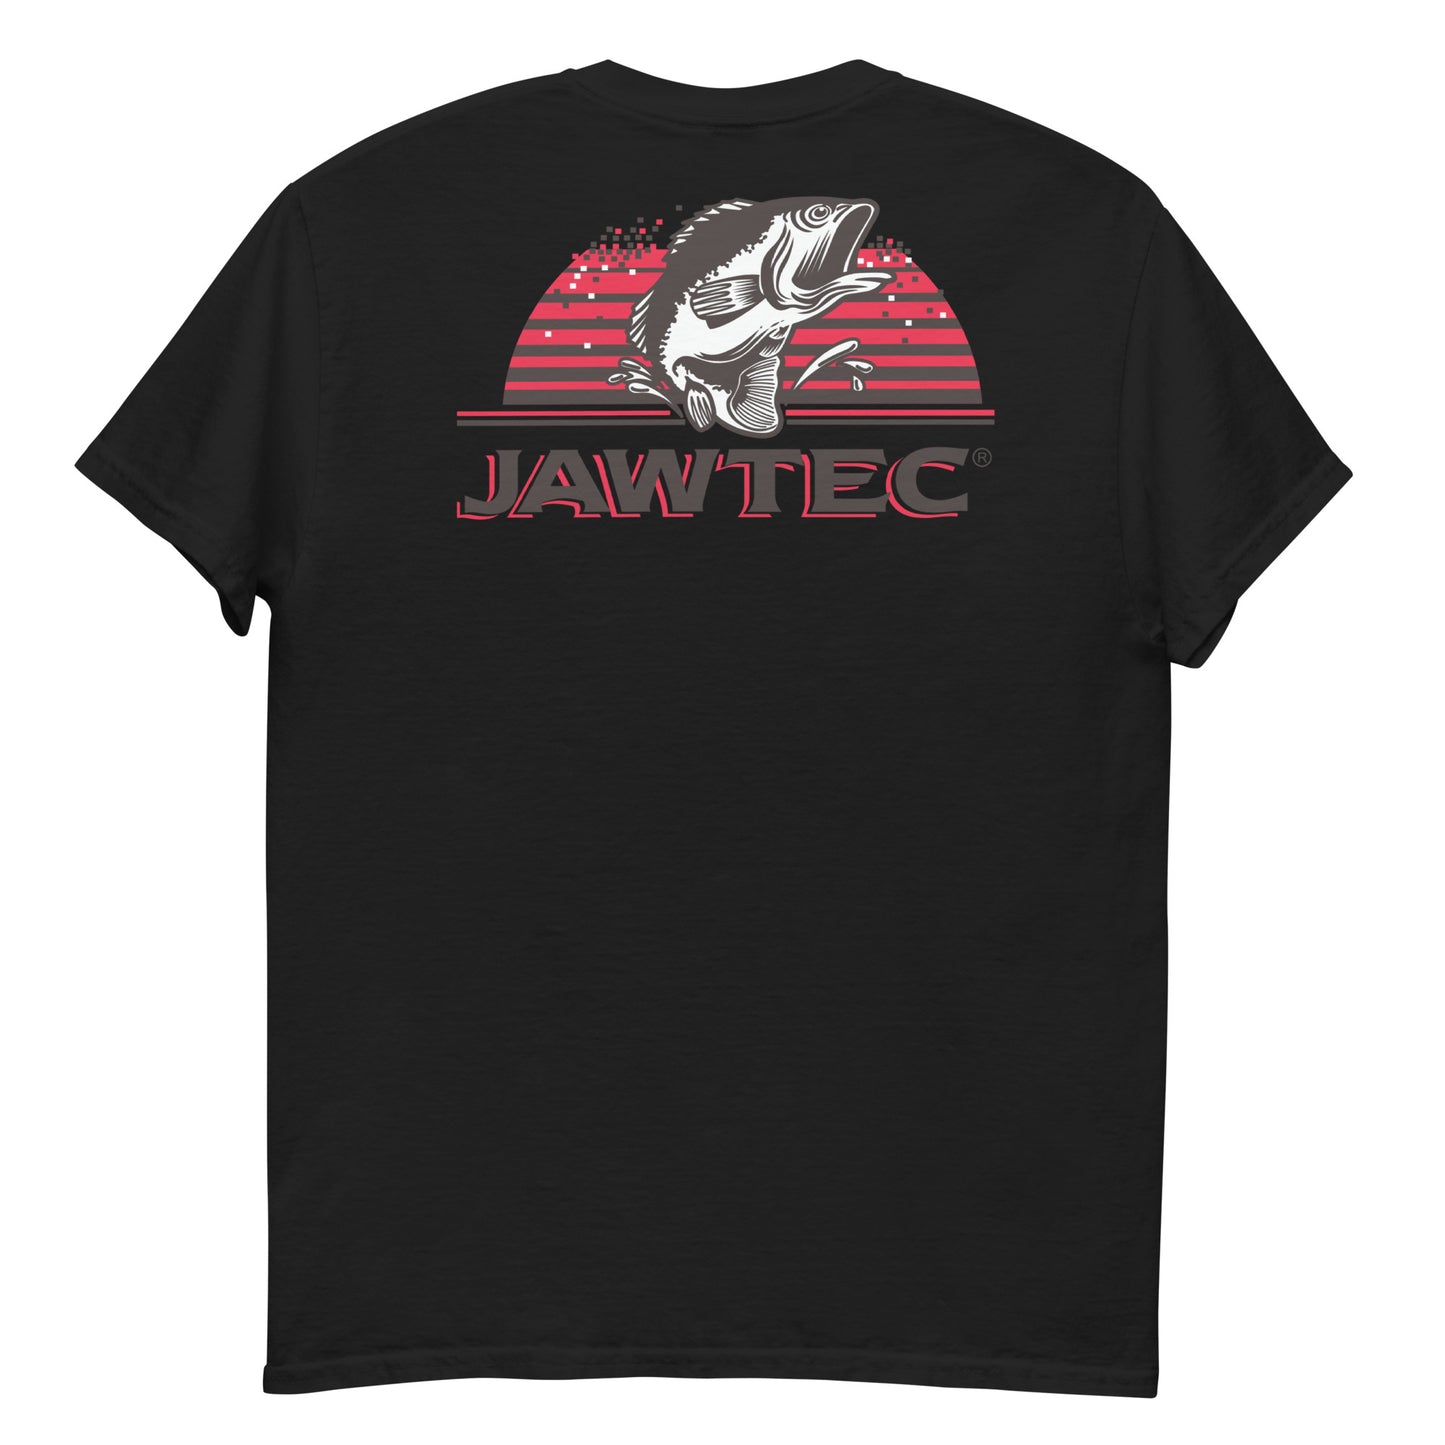 Jawtec Shirt